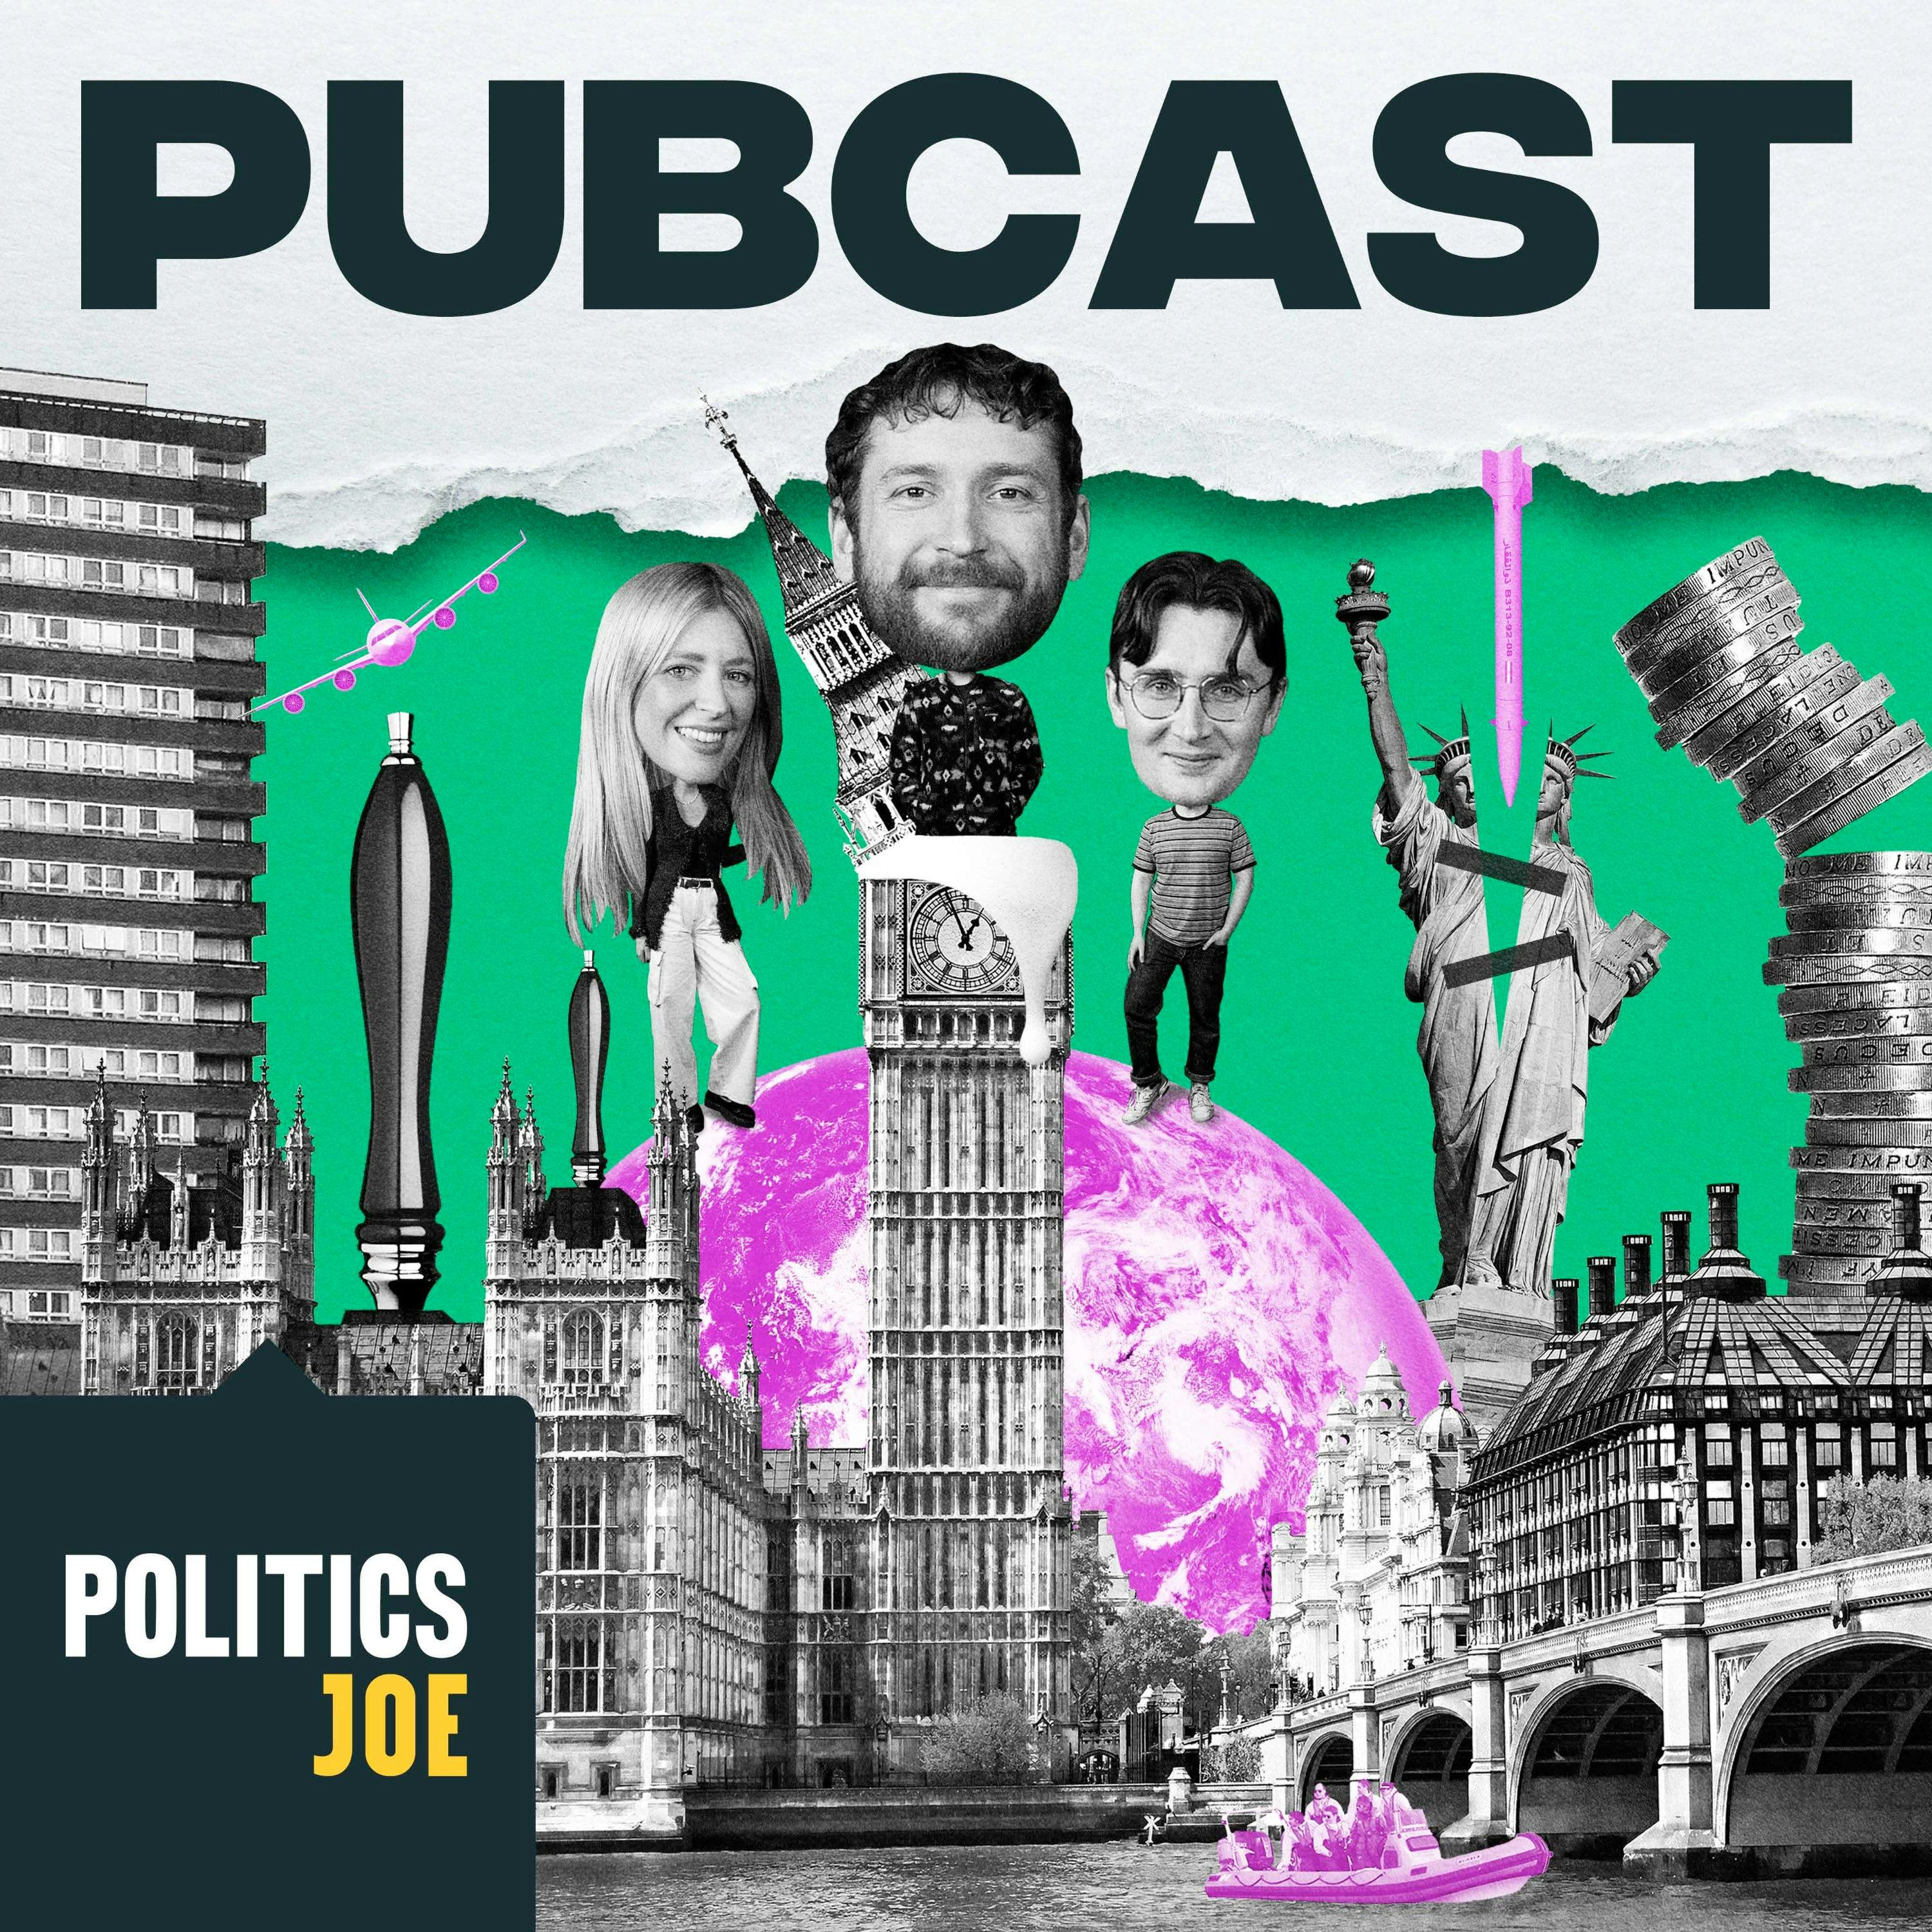 Pubcast by PoliticsJOE